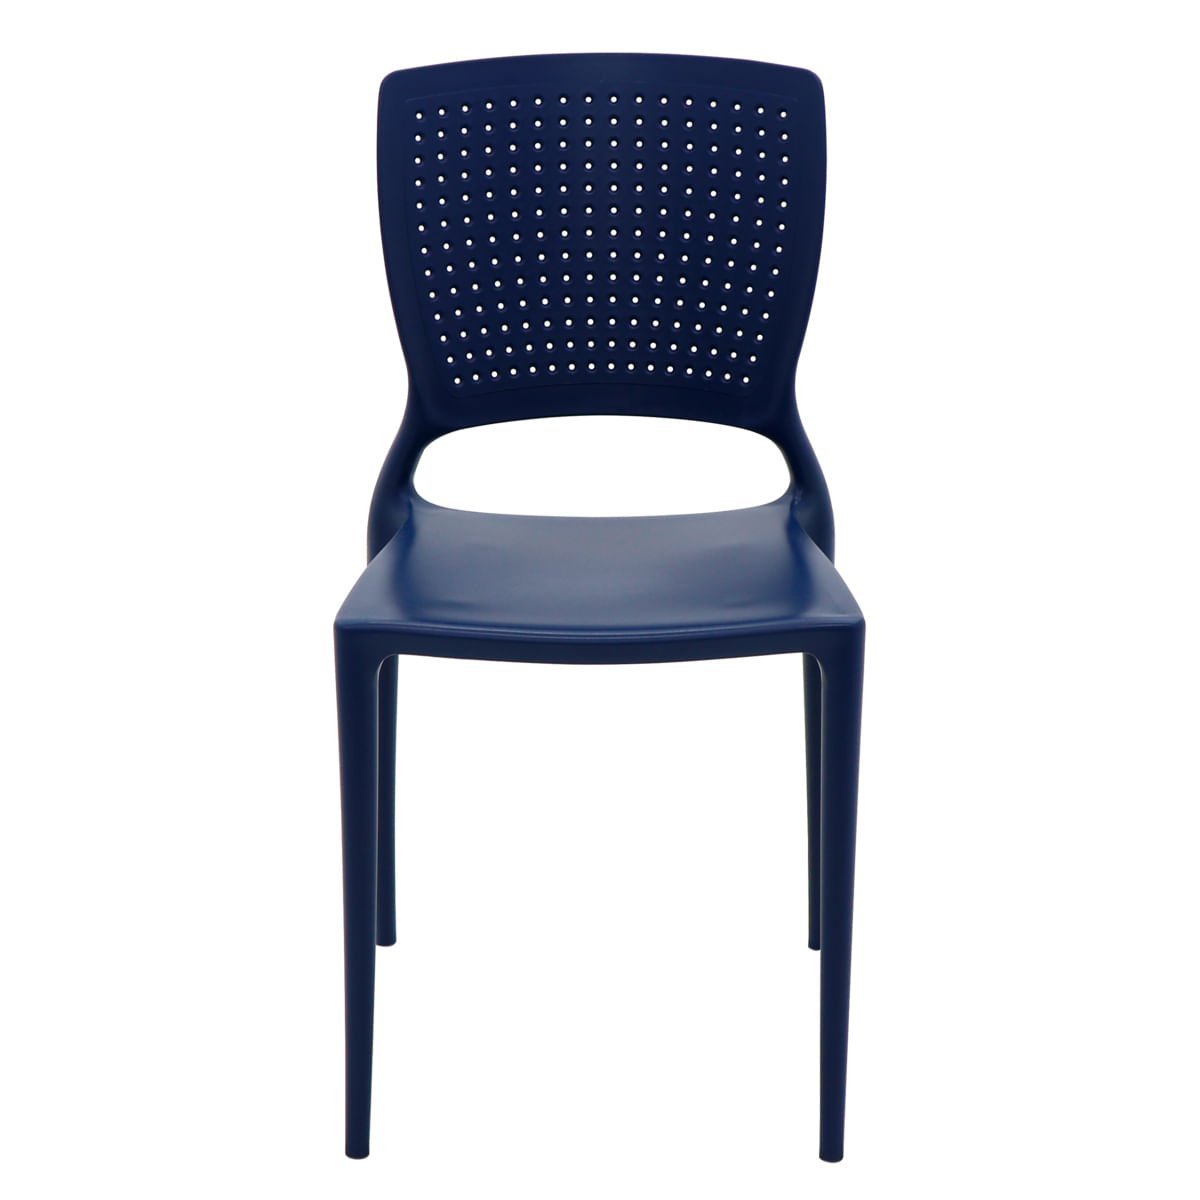 Cadeira Tramontina Safira Summa em Polipropileno e Fibra de Vidro Azul Yale - 2